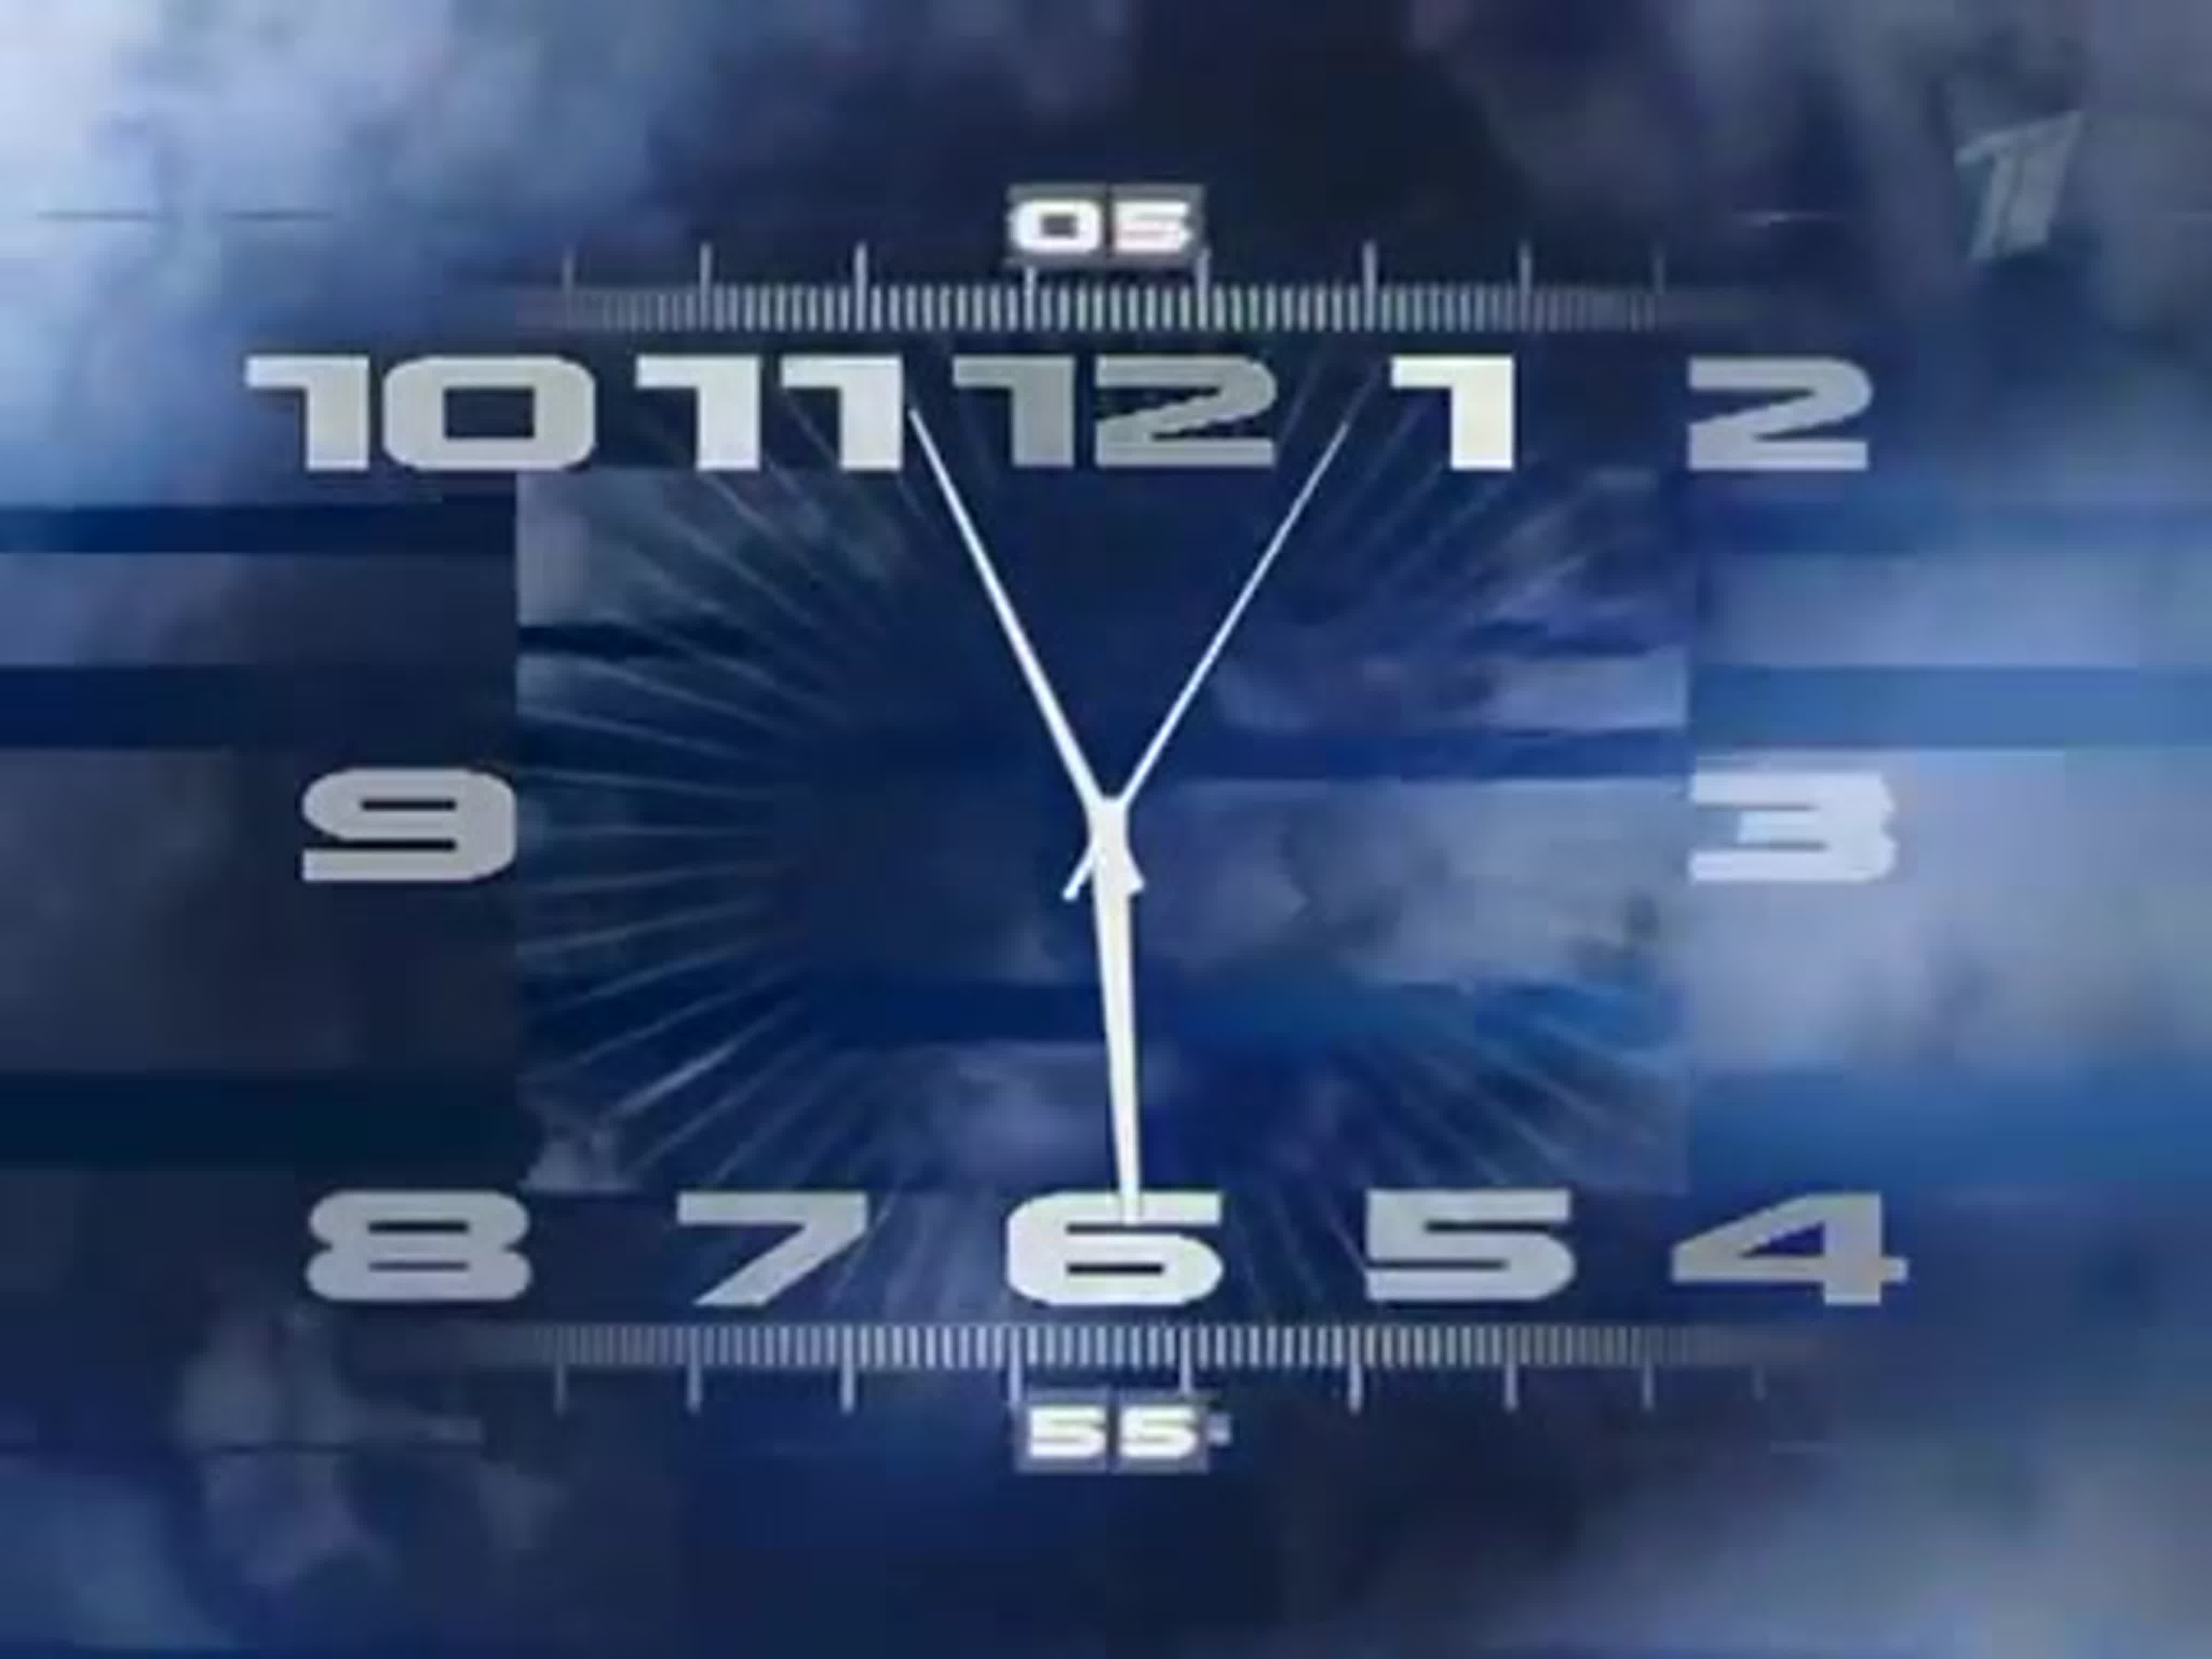 Песня нагетса 1 час. Часы первого канала 2011. Часы ТВС со звуком часов 1 канала. Часы первого канала 2000-2011. Часы первого канала оригинал.